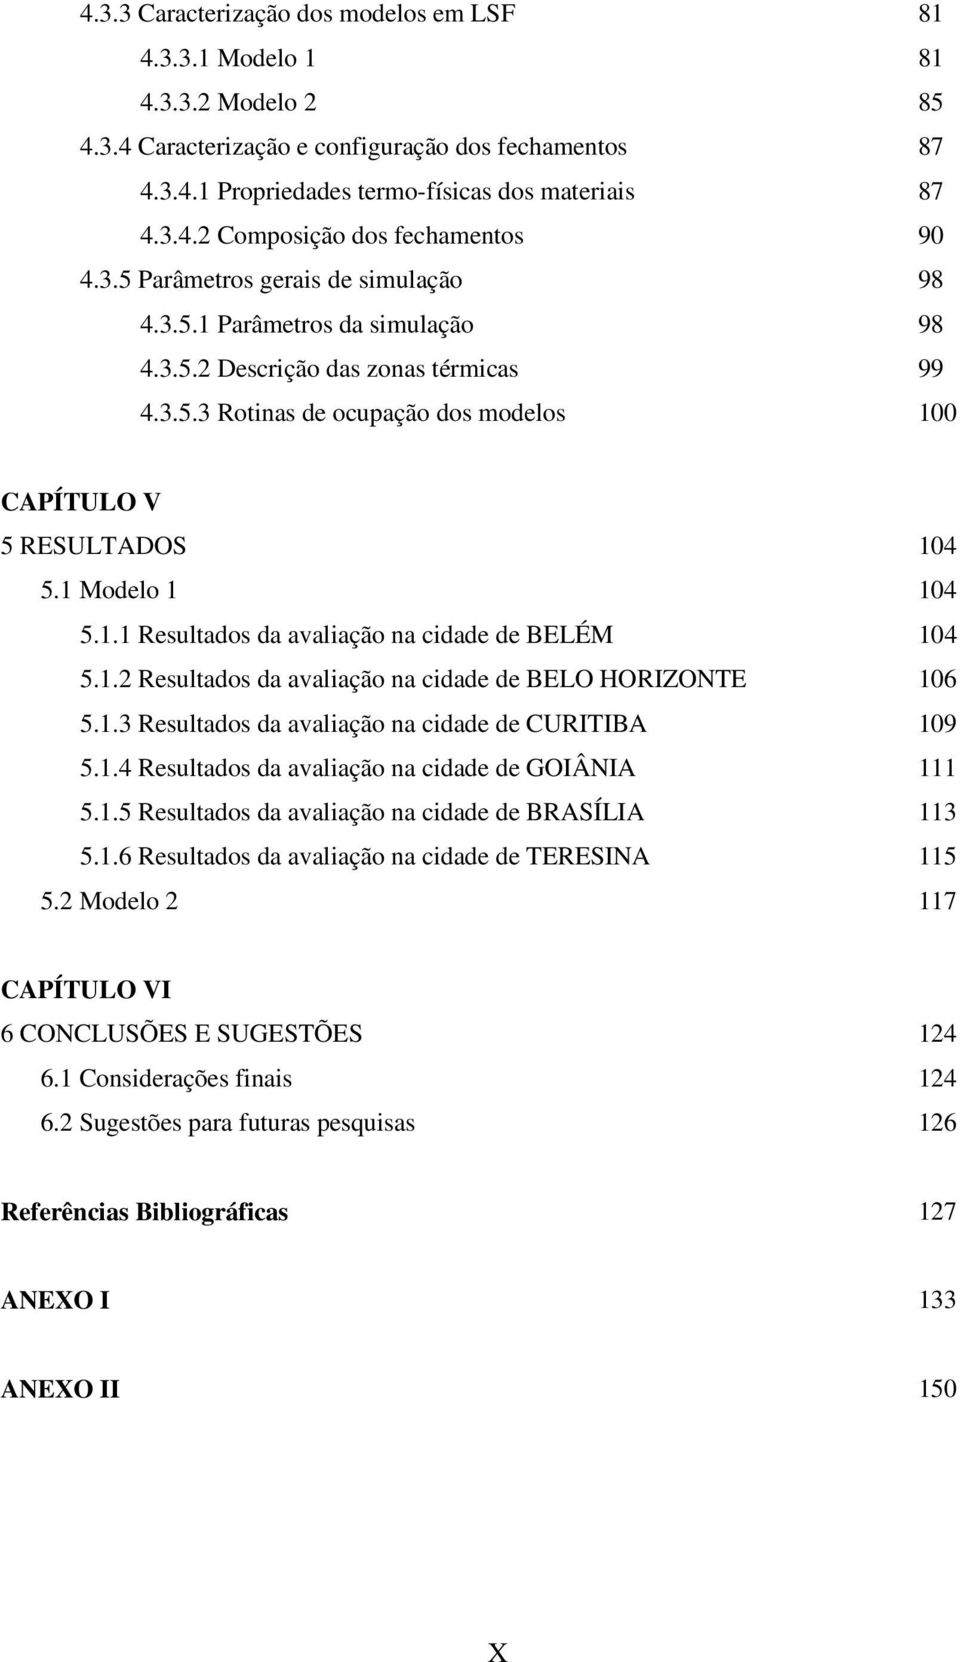 1 Modelo 1 104 5.1.1 Resultados da avaliação na cidade de BELÉM 104 5.1.2 Resultados da avaliação na cidade de BELO HORIZONTE 106 5.1.3 Resultados da avaliação na cidade de CURITIBA 109 5.1.4 Resultados da avaliação na cidade de GOIÂNIA 111 5.